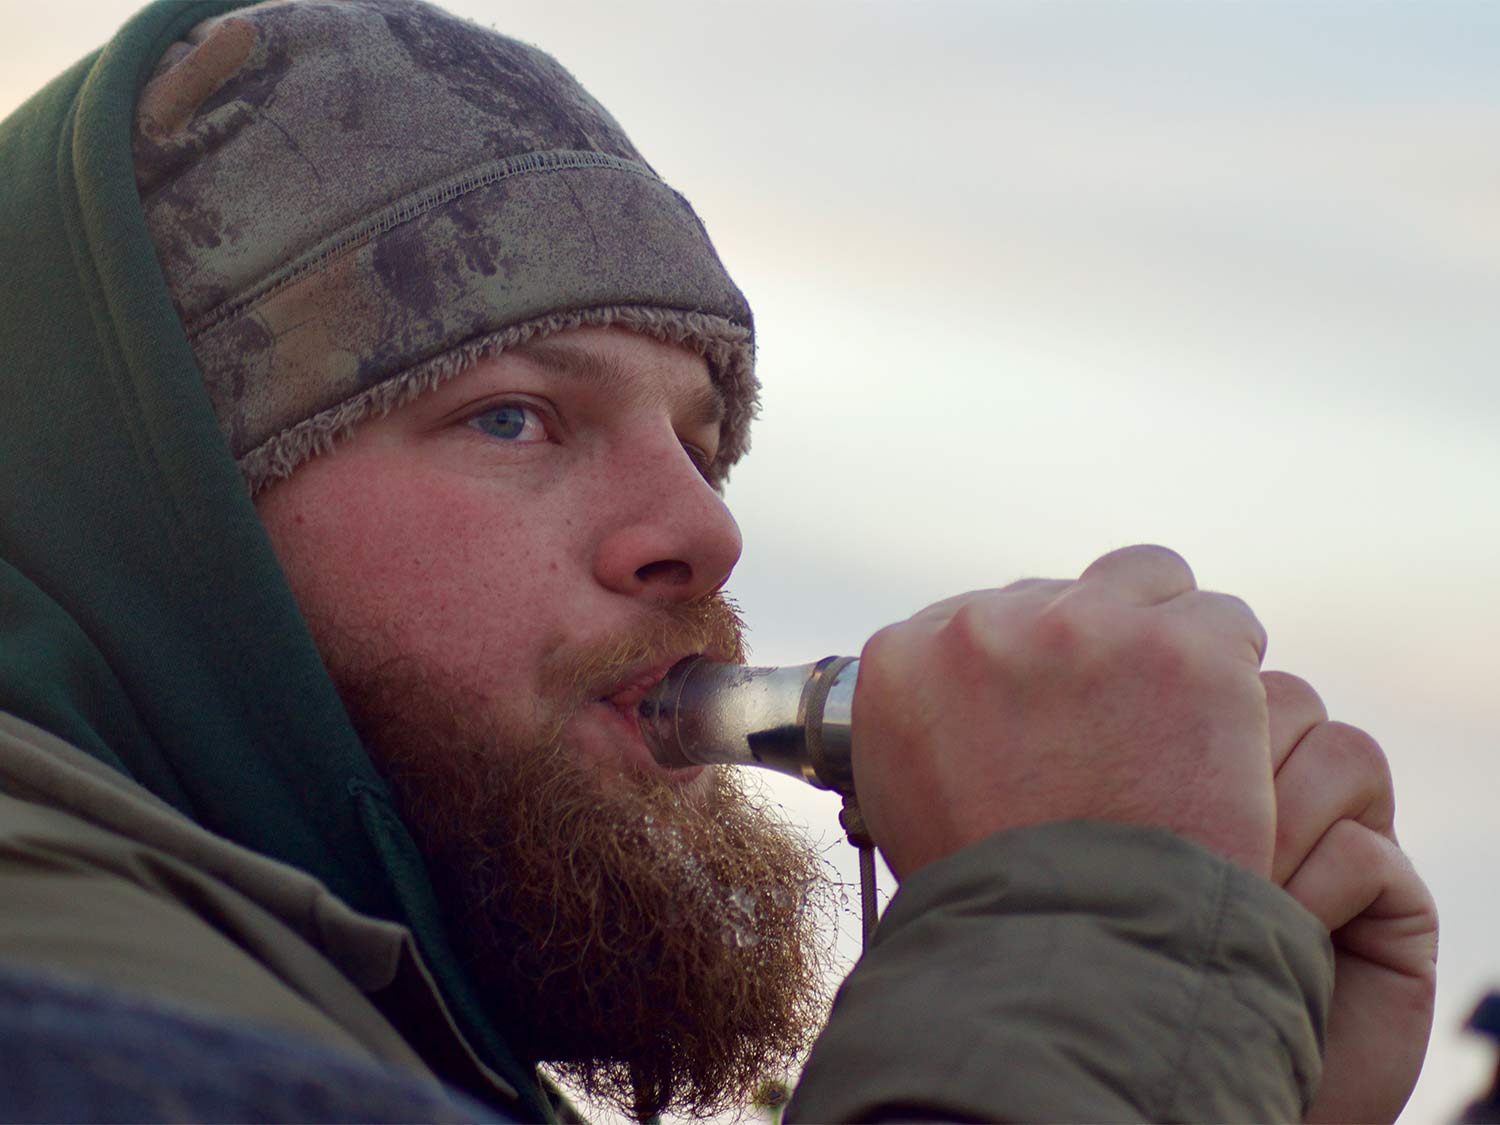 A bearded man uses a bird call.